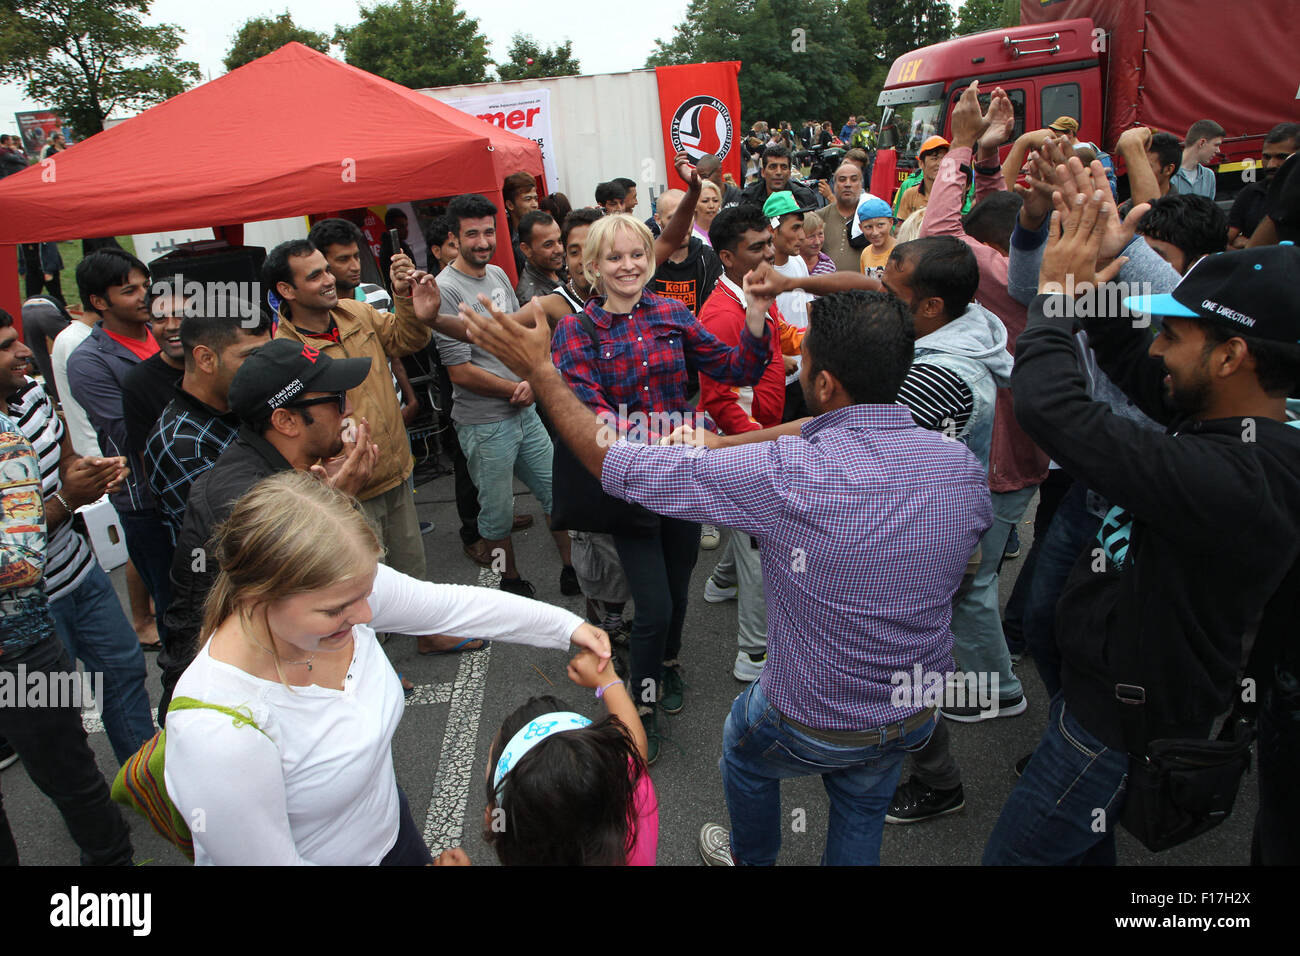 Heidenau, Allemagne. Août 28, 2015. Les réfugiés et les partisans danser ensemble dans les rues au cours d'une partie d'accueil pour les réfugiés à Heidenau, Allemagne, 28 août 2015. Le groupe de citoyens 'Dresden' Nazifrei (Dresde gratuitement de Nazis) a organisé l'événement pour accueillir l'arrivée de réfugiés à Heidenau. Photo : Sebastian Willnow/dpa/Alamy Live News Banque D'Images